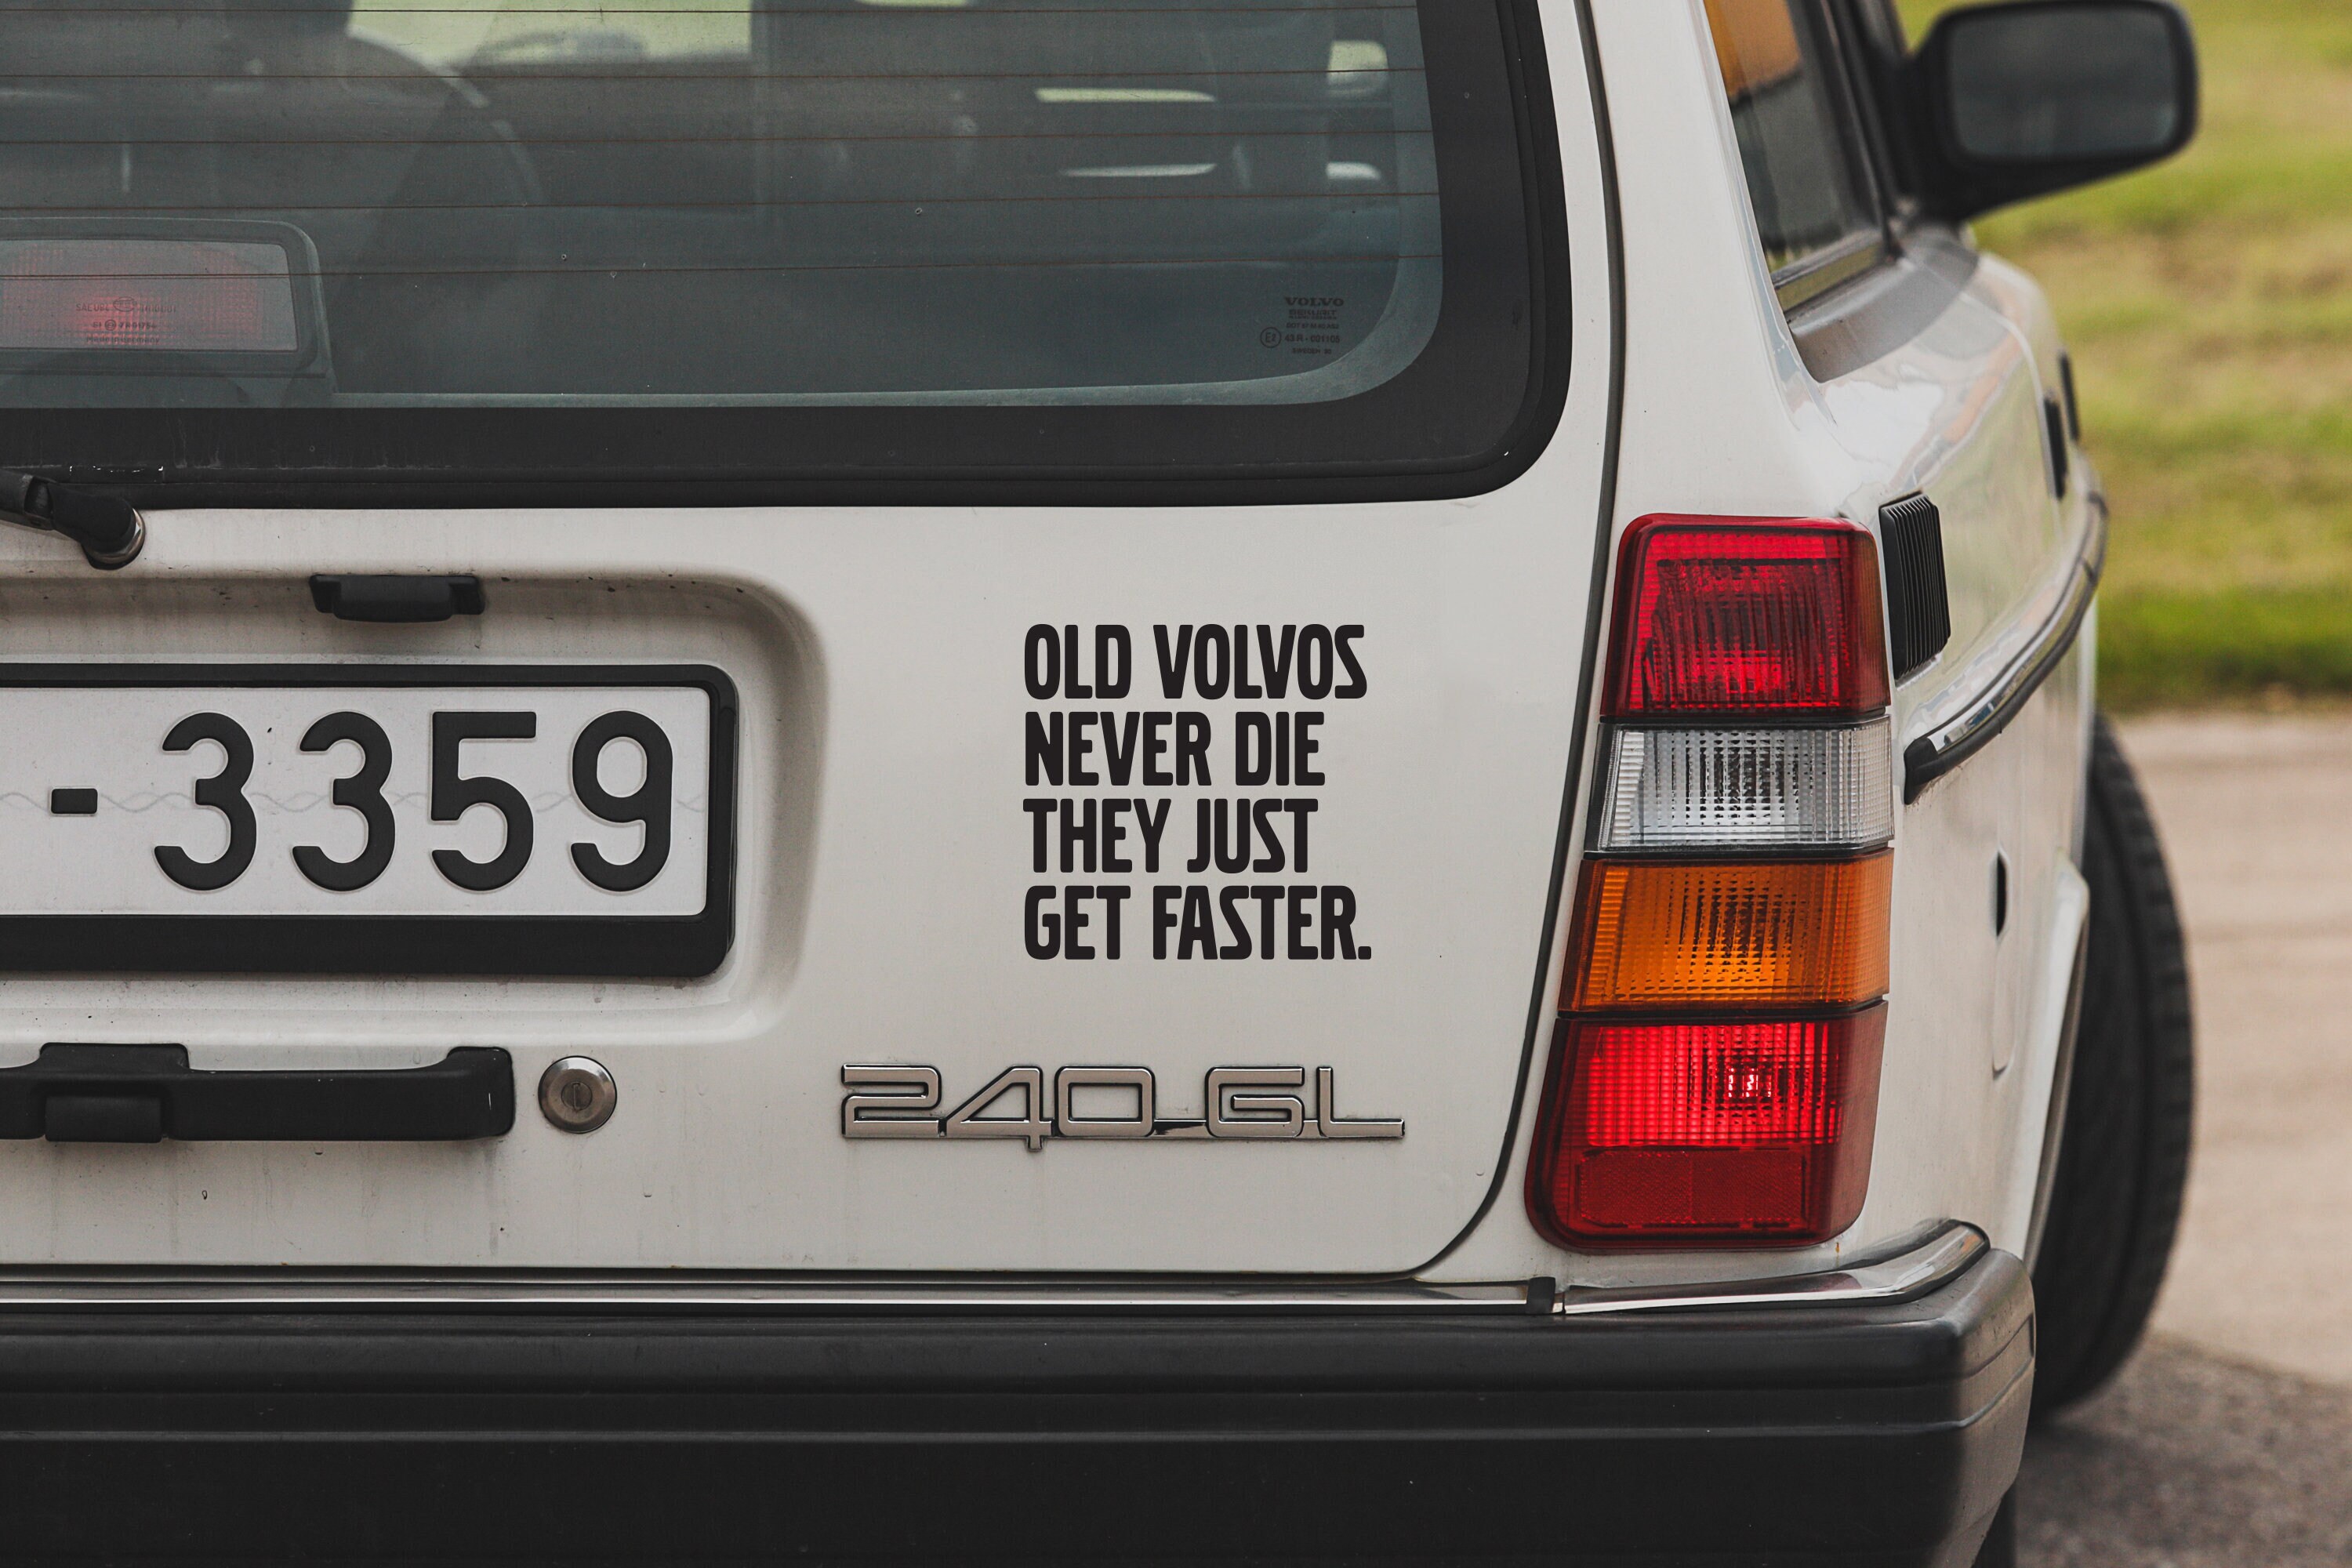 Aufkleber für Volvo, Volvo Autoaufkleber, alte Volvos Never Die Aufkleber, volvo  Autoaufkleber, Vinylaufkleber, Autoaufkleber, neue Aufkleber Heckscheibe -  .de